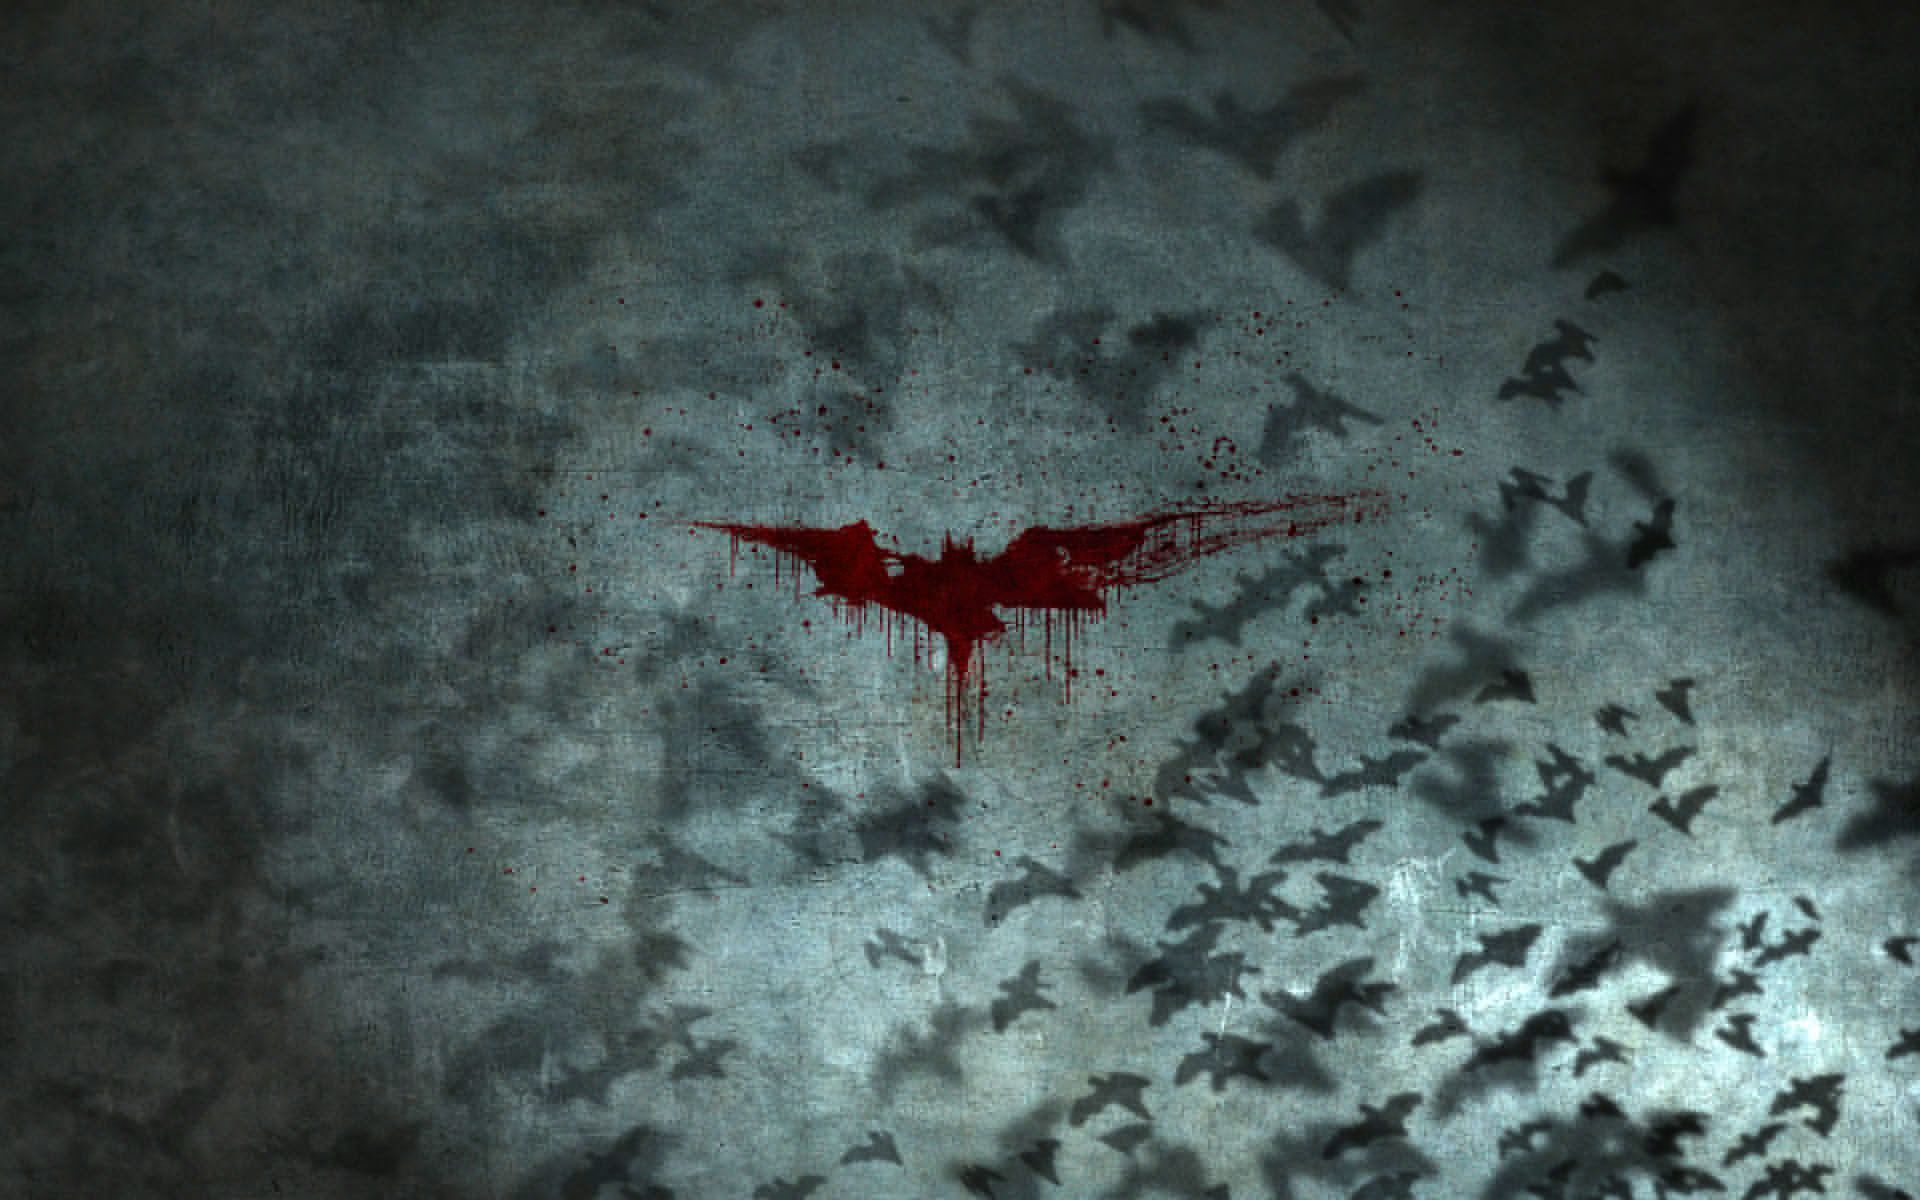 Batman quotes Batman Logo wallpaper 1680x1050 209503 WallpaperUP